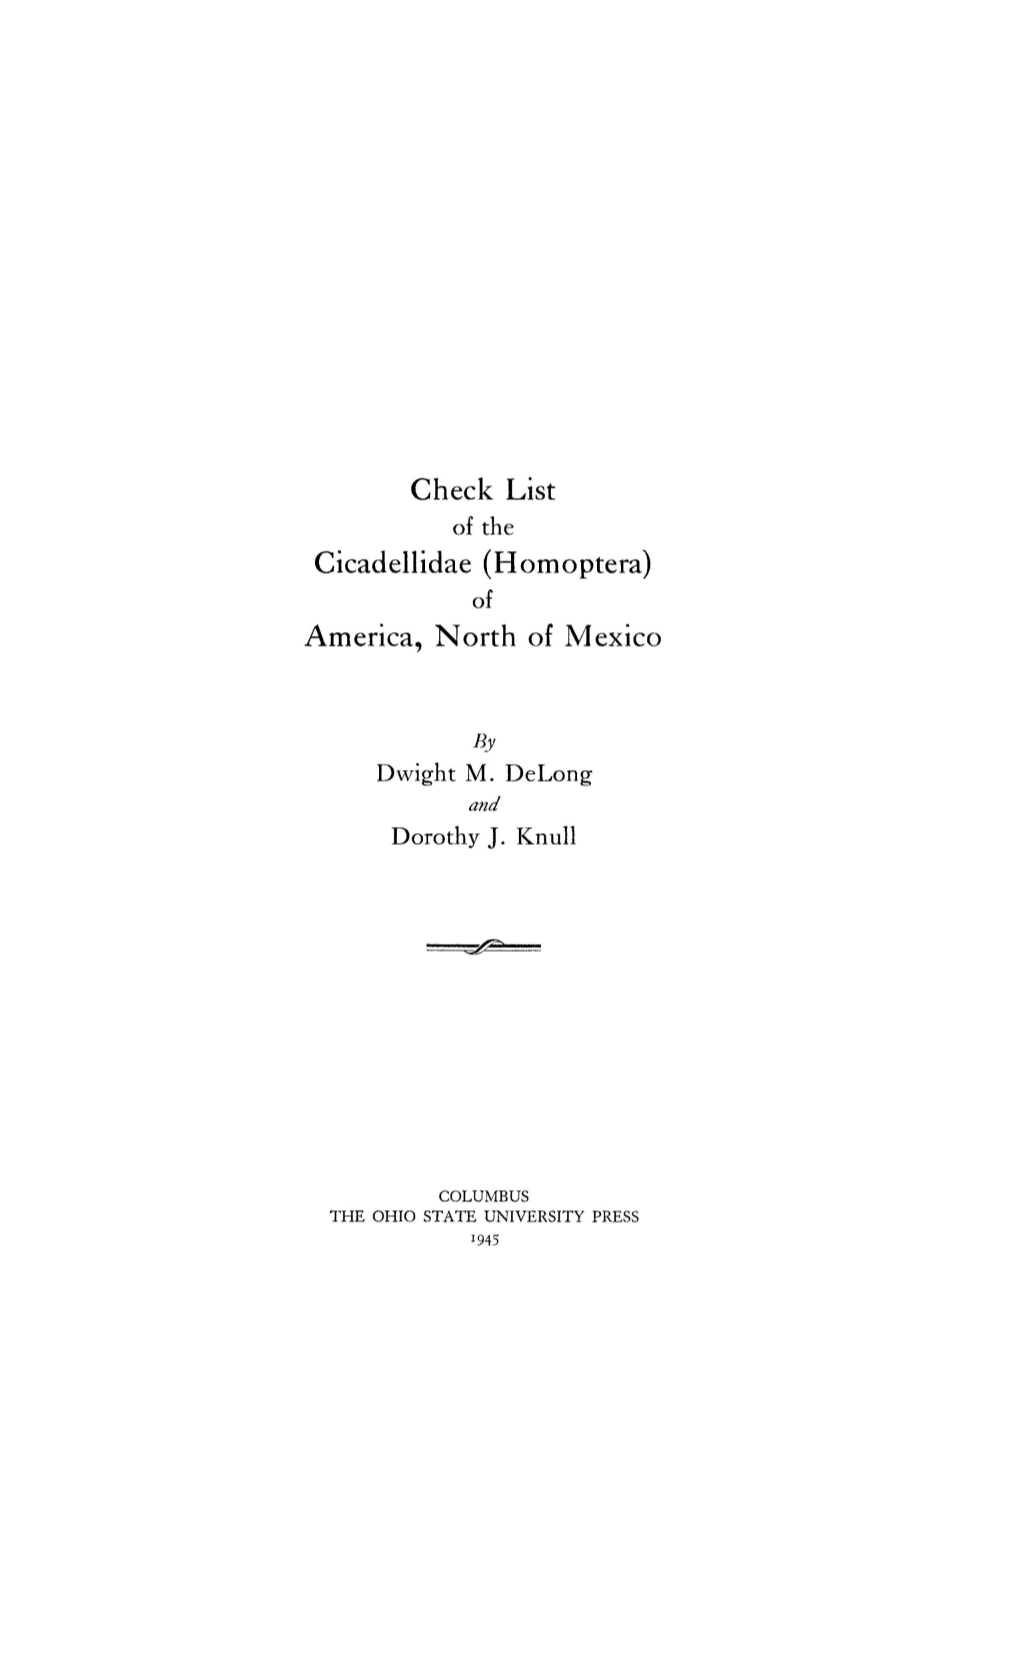 Check List Cicadeliidae (Homoptera) America, North of Mexico